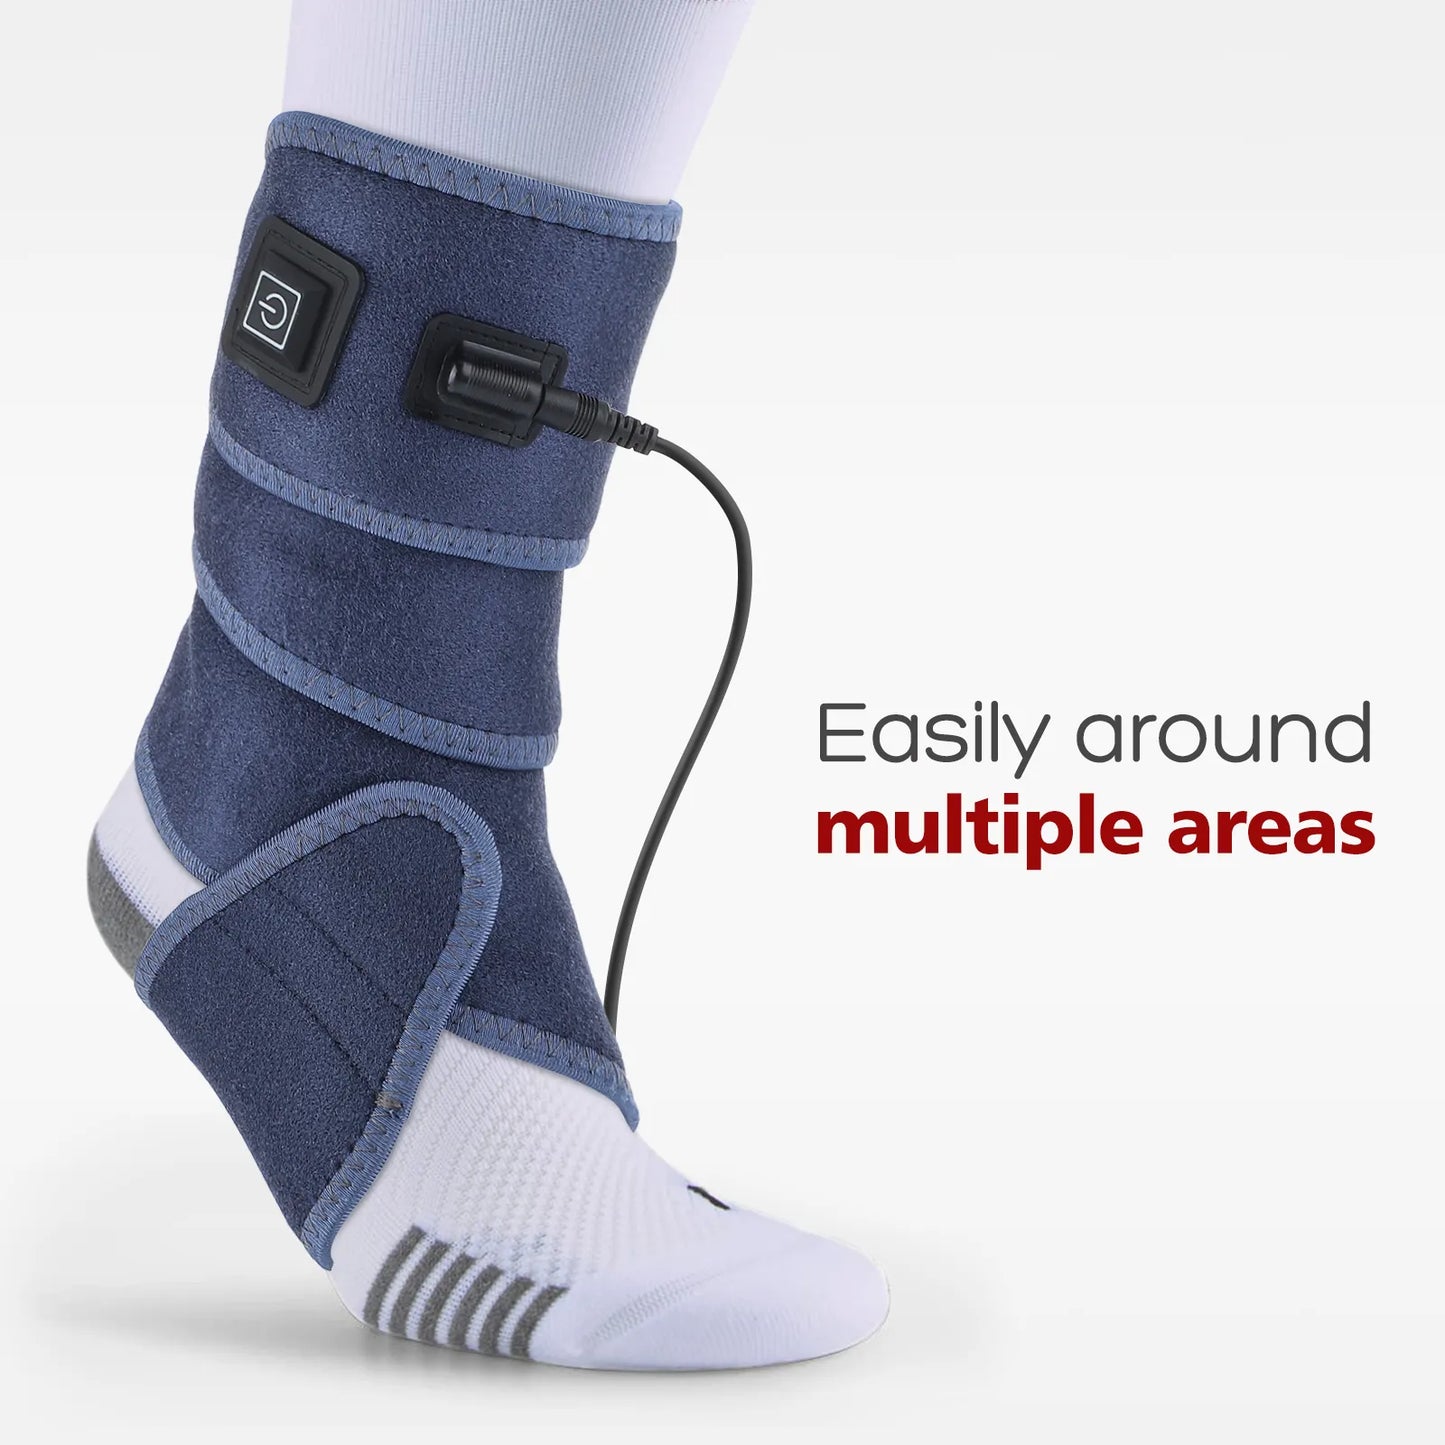 Almohadilla térmica USB para brazo, envoltura para mano, codo, muñeca, tobillo, soporte para pierna, calentador eléctrico, compresión caliente, alivio del dolor de artritis